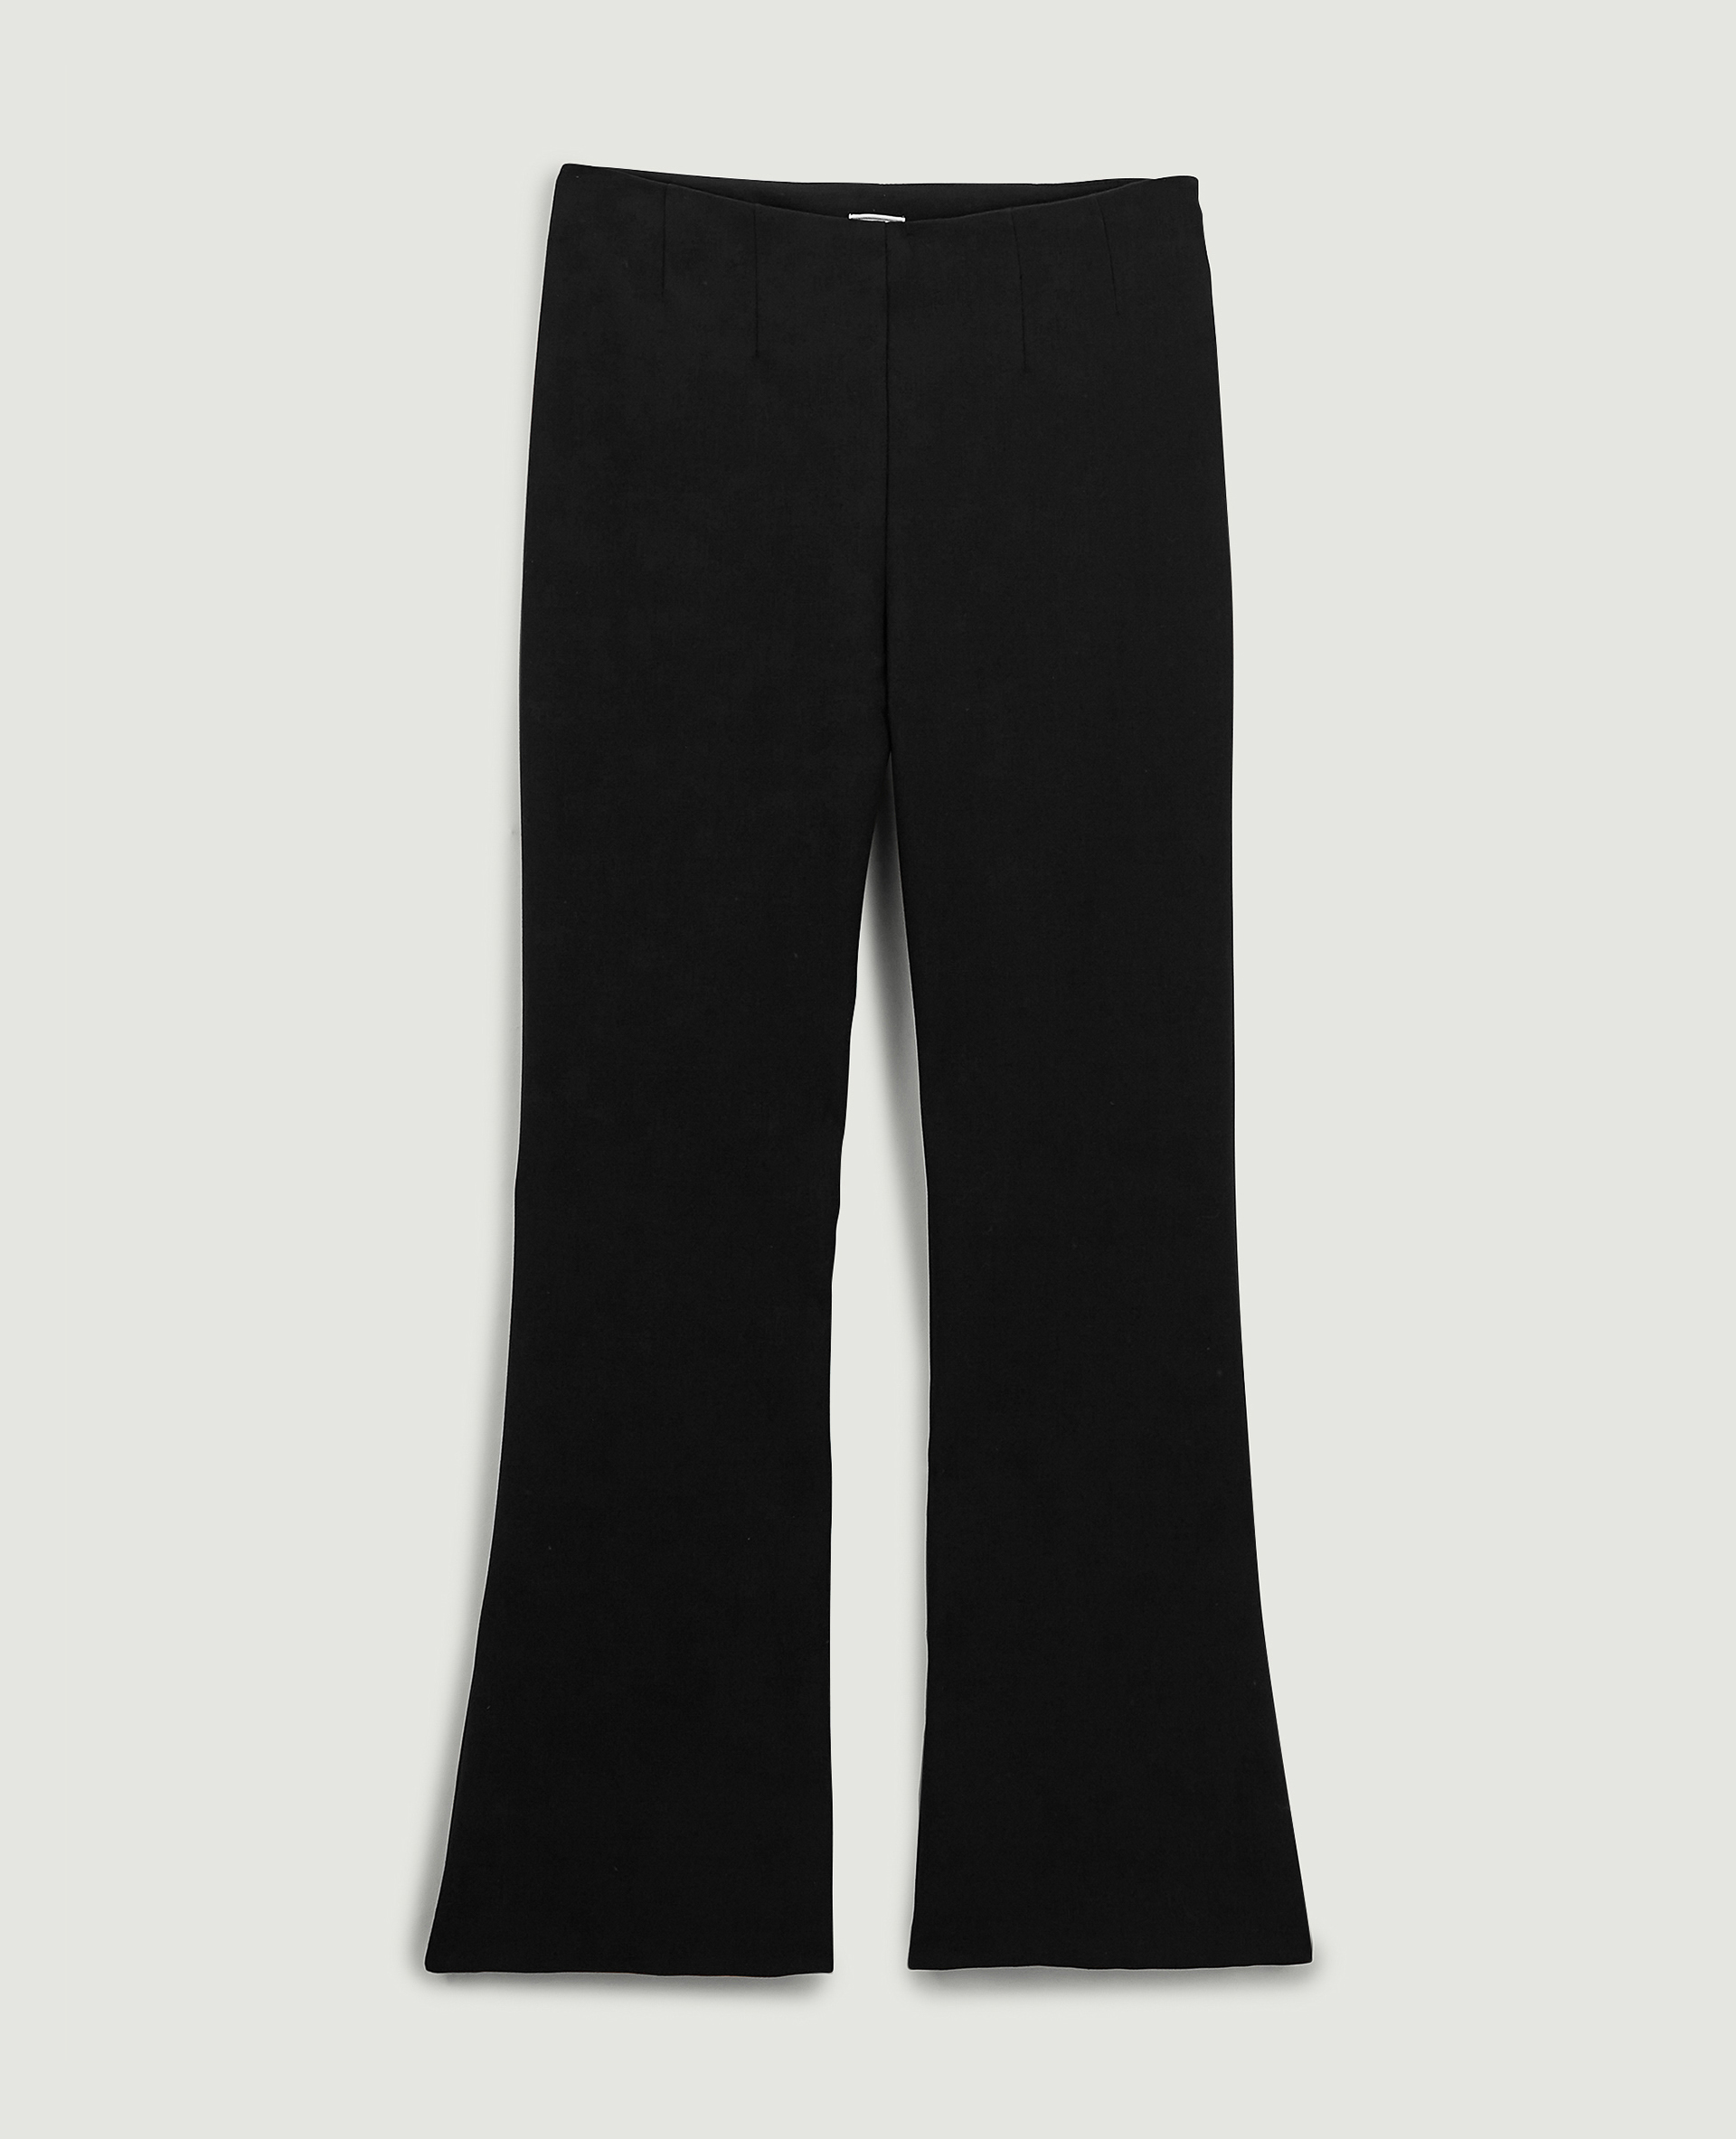 Pantalon flare noir - Pimkie